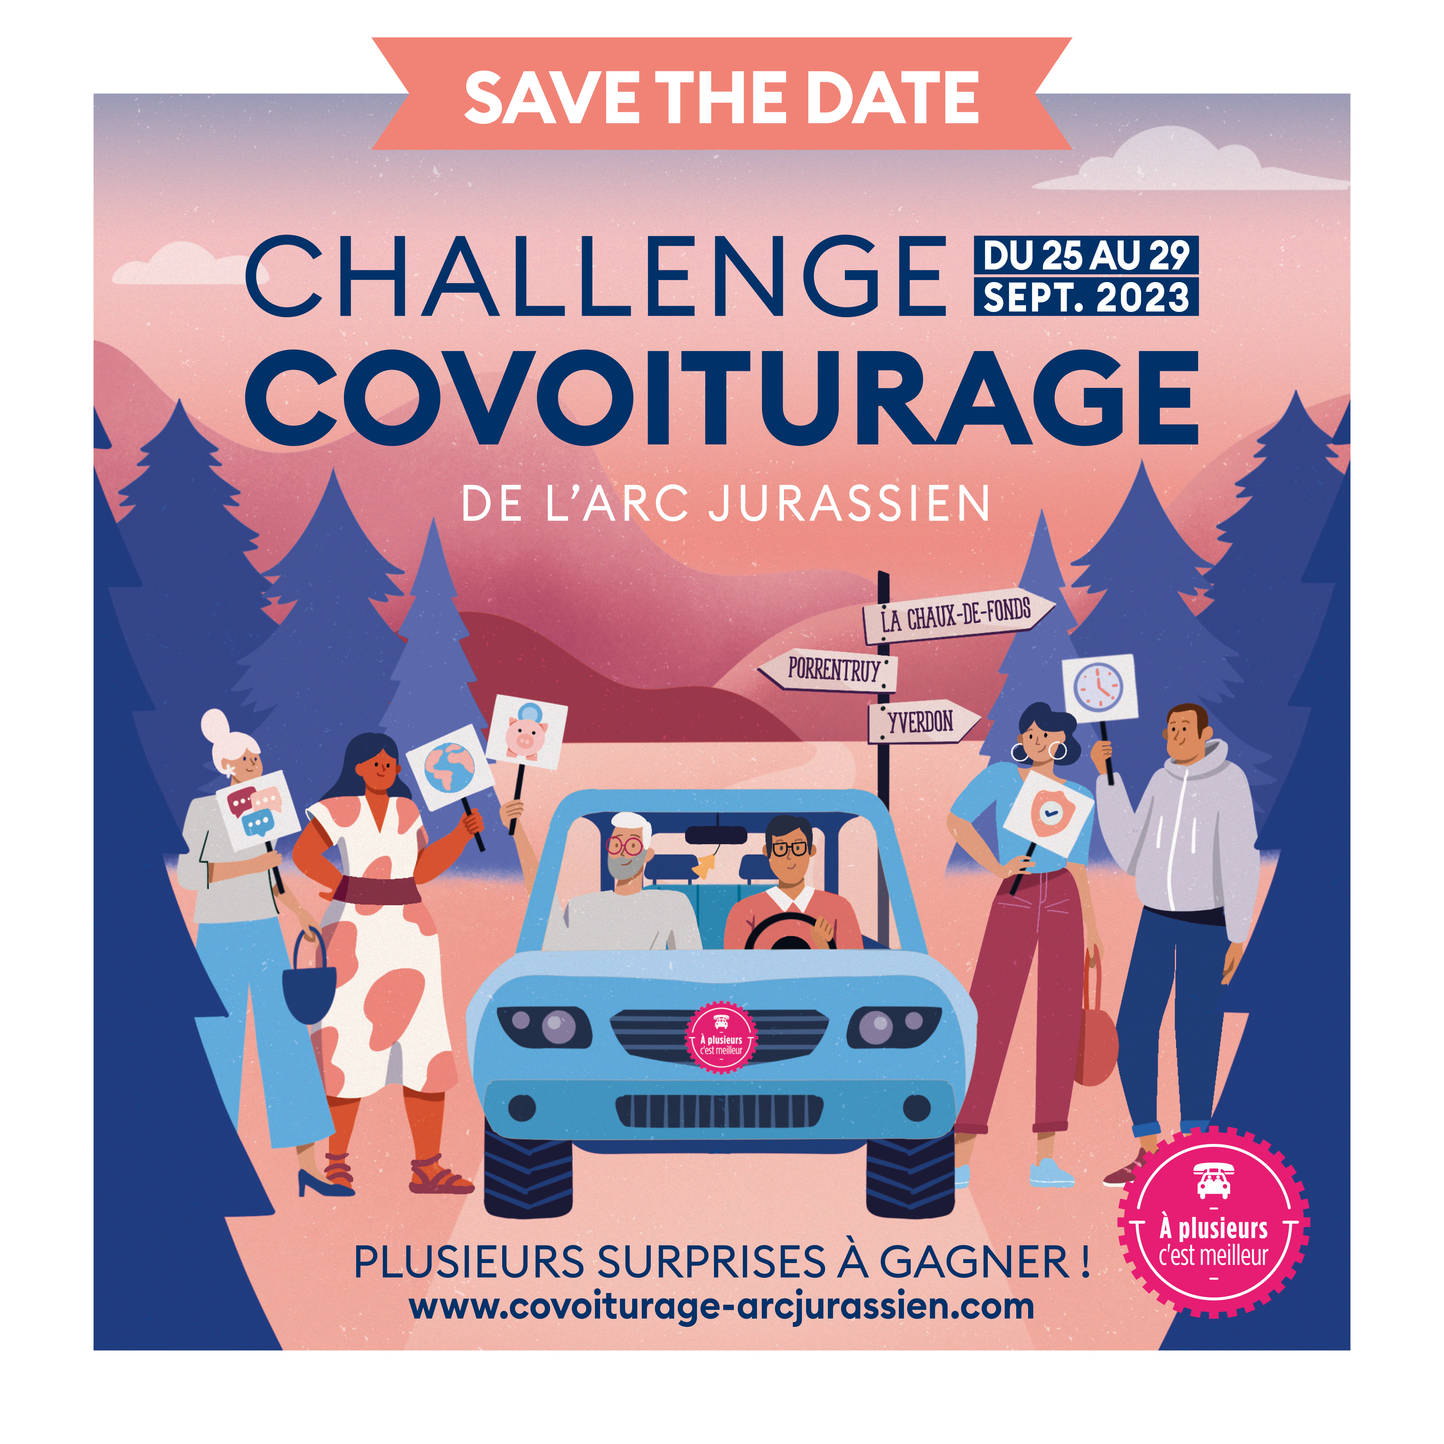 Le prochain Challenge Covoiturage aura lieu du 25 au 29 septembre 2023